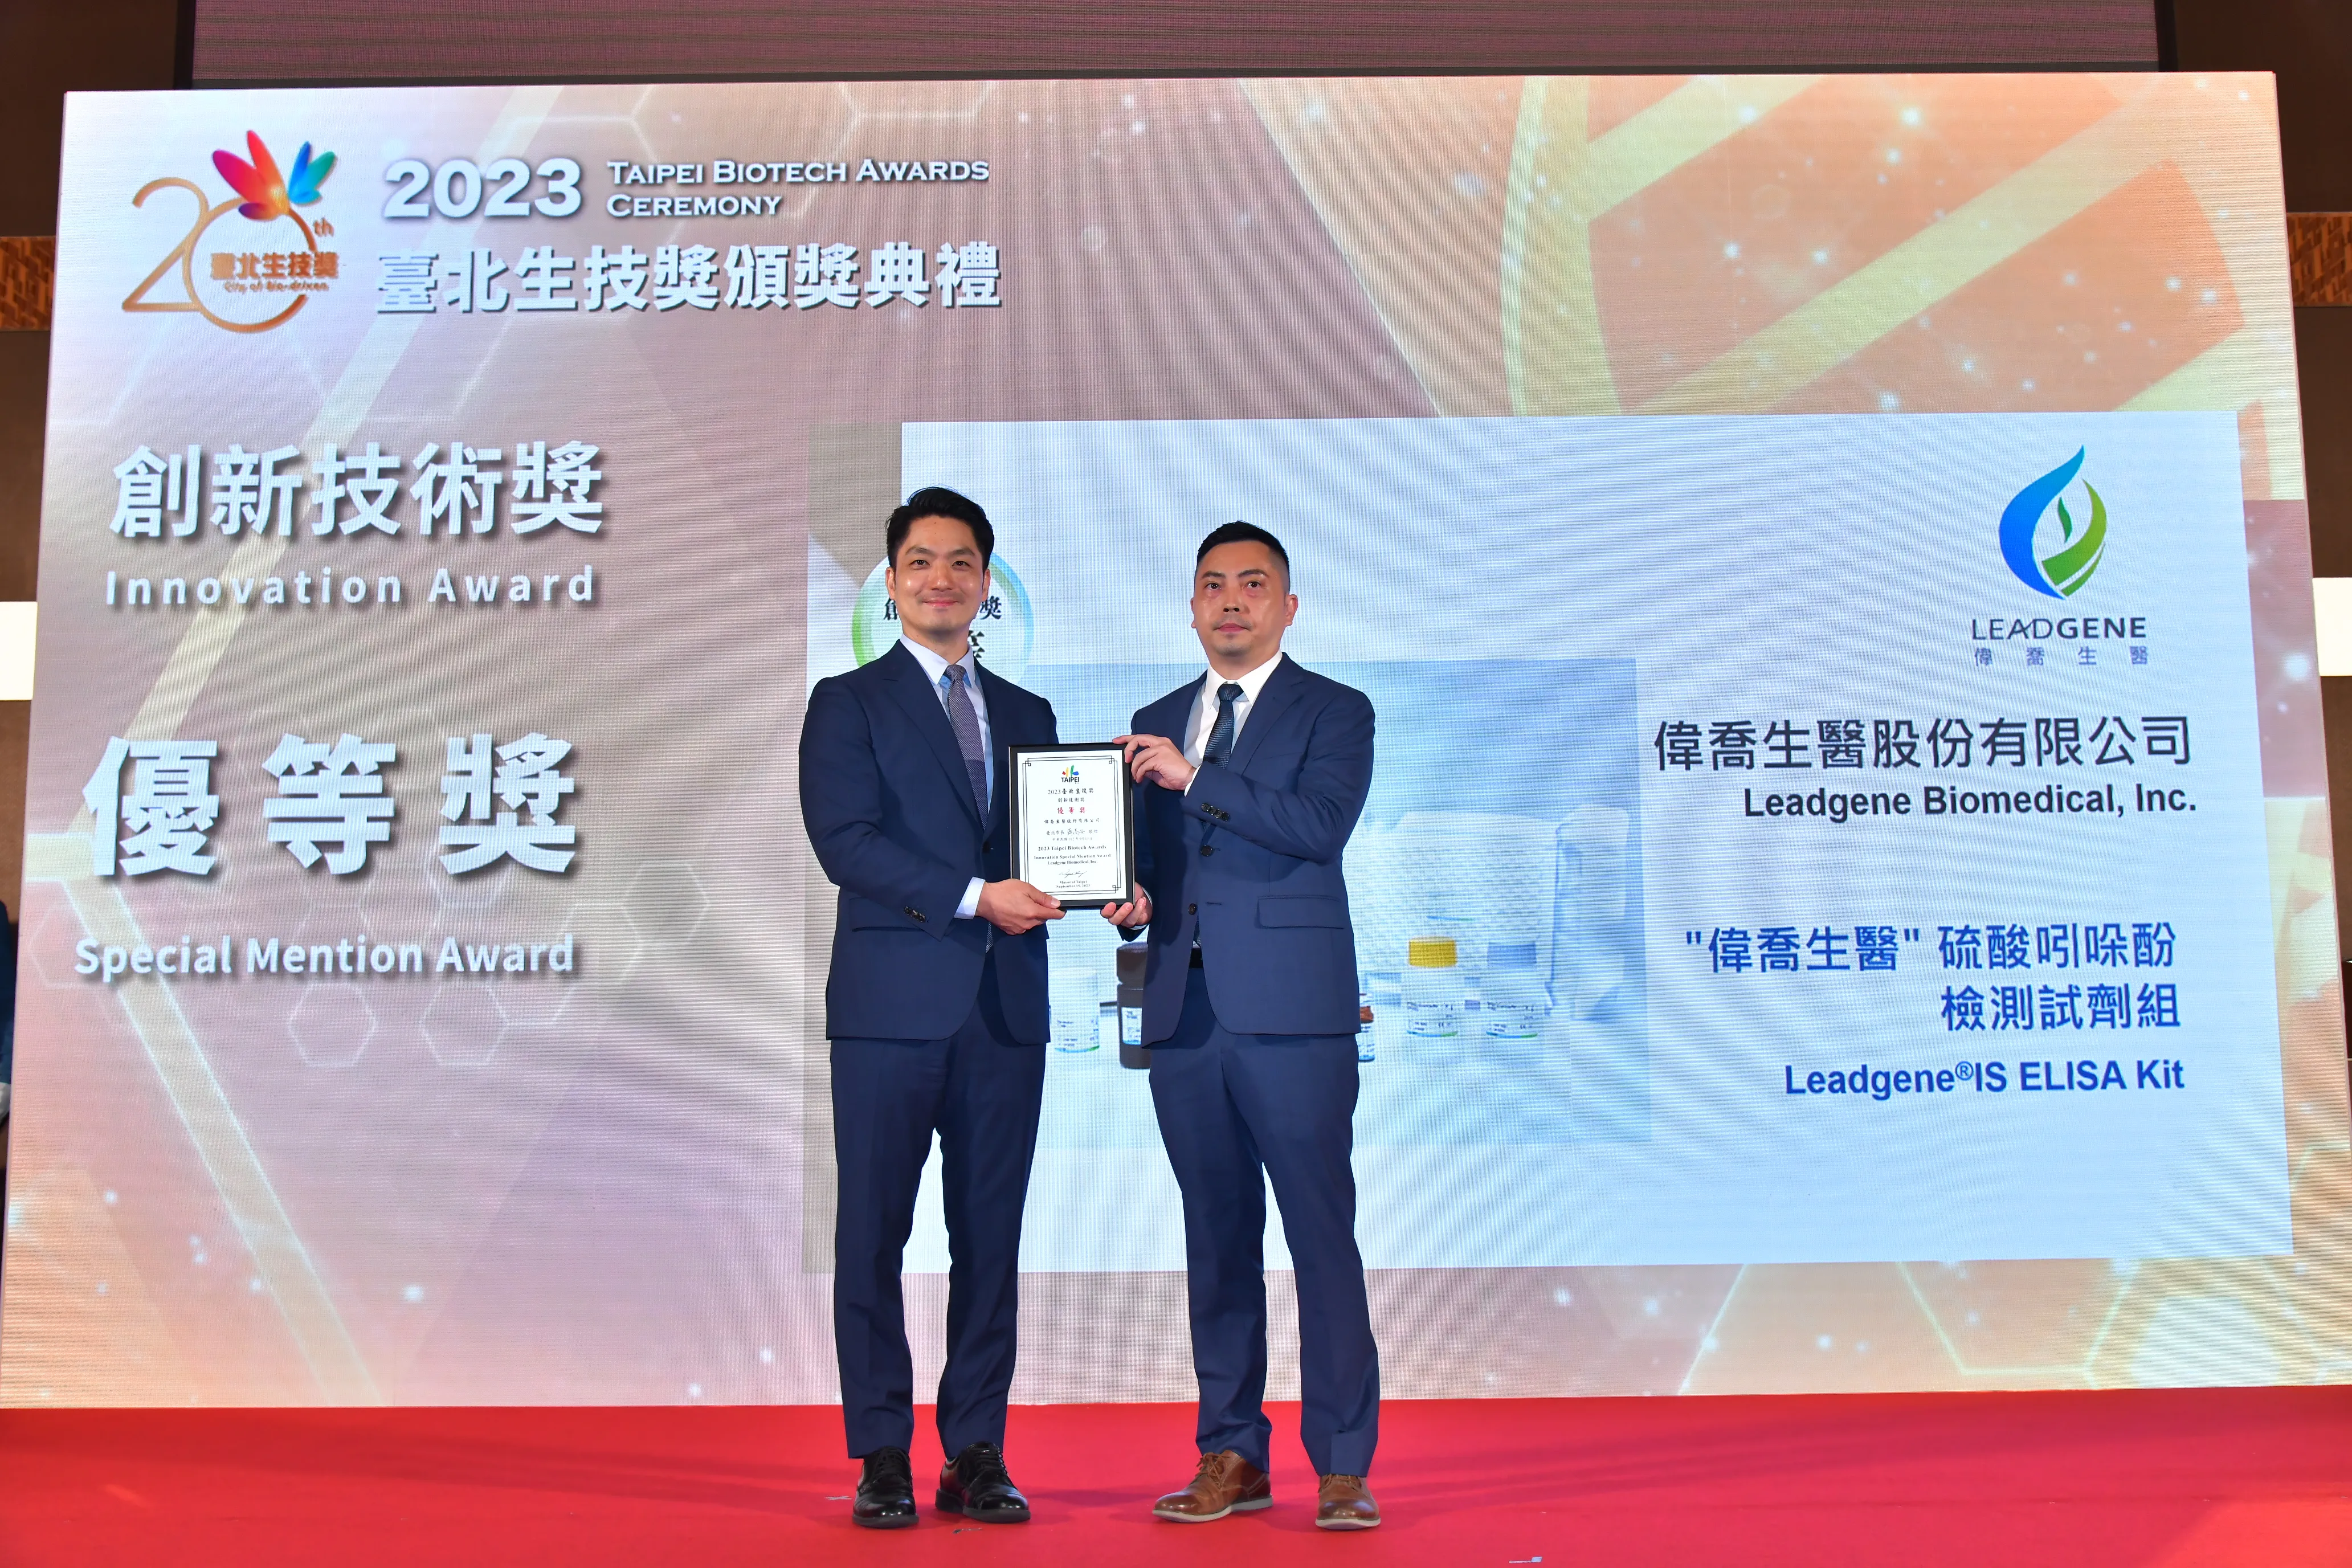 2023_Taipei_Biotech_Awards